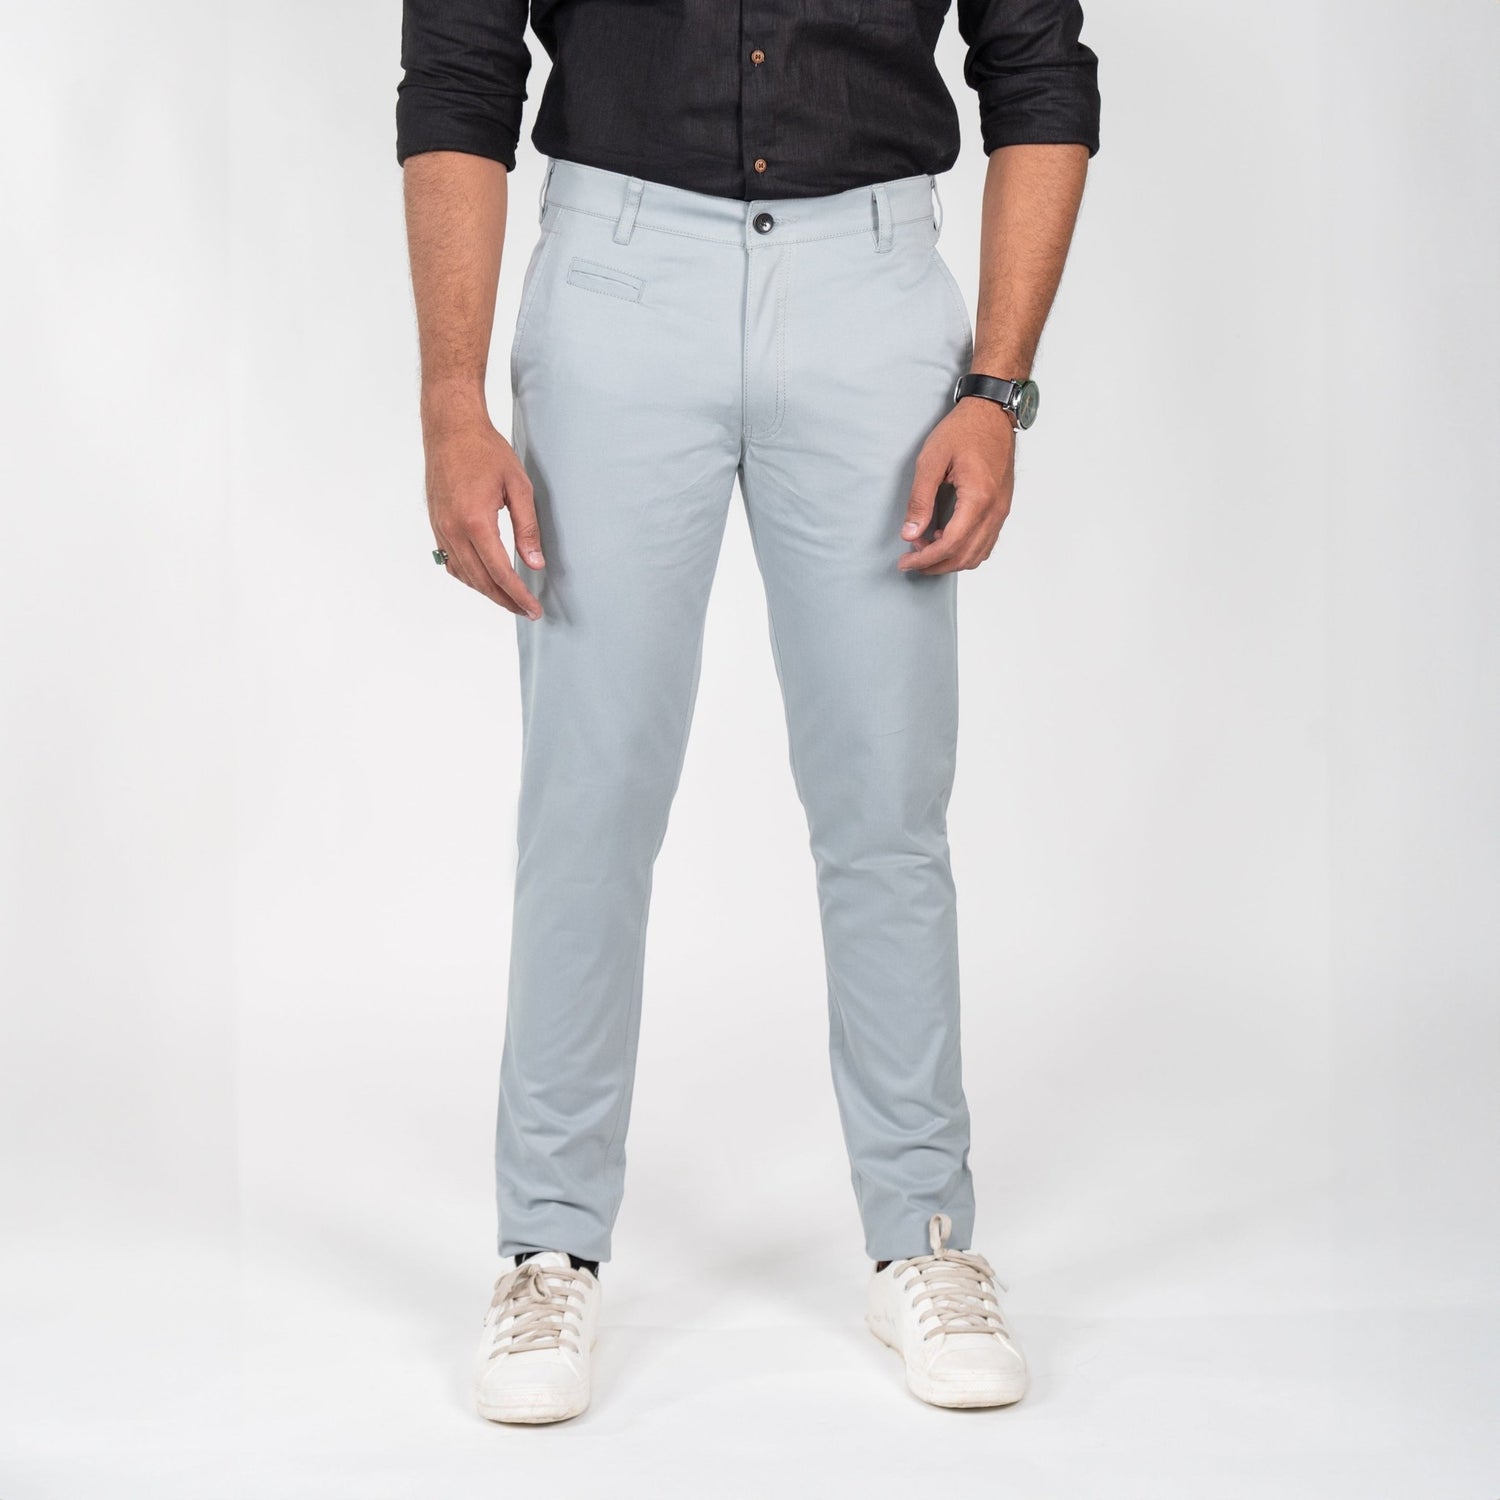 Blue Grey Color Cotton Trouser Pants for Men - Punekar Cotton